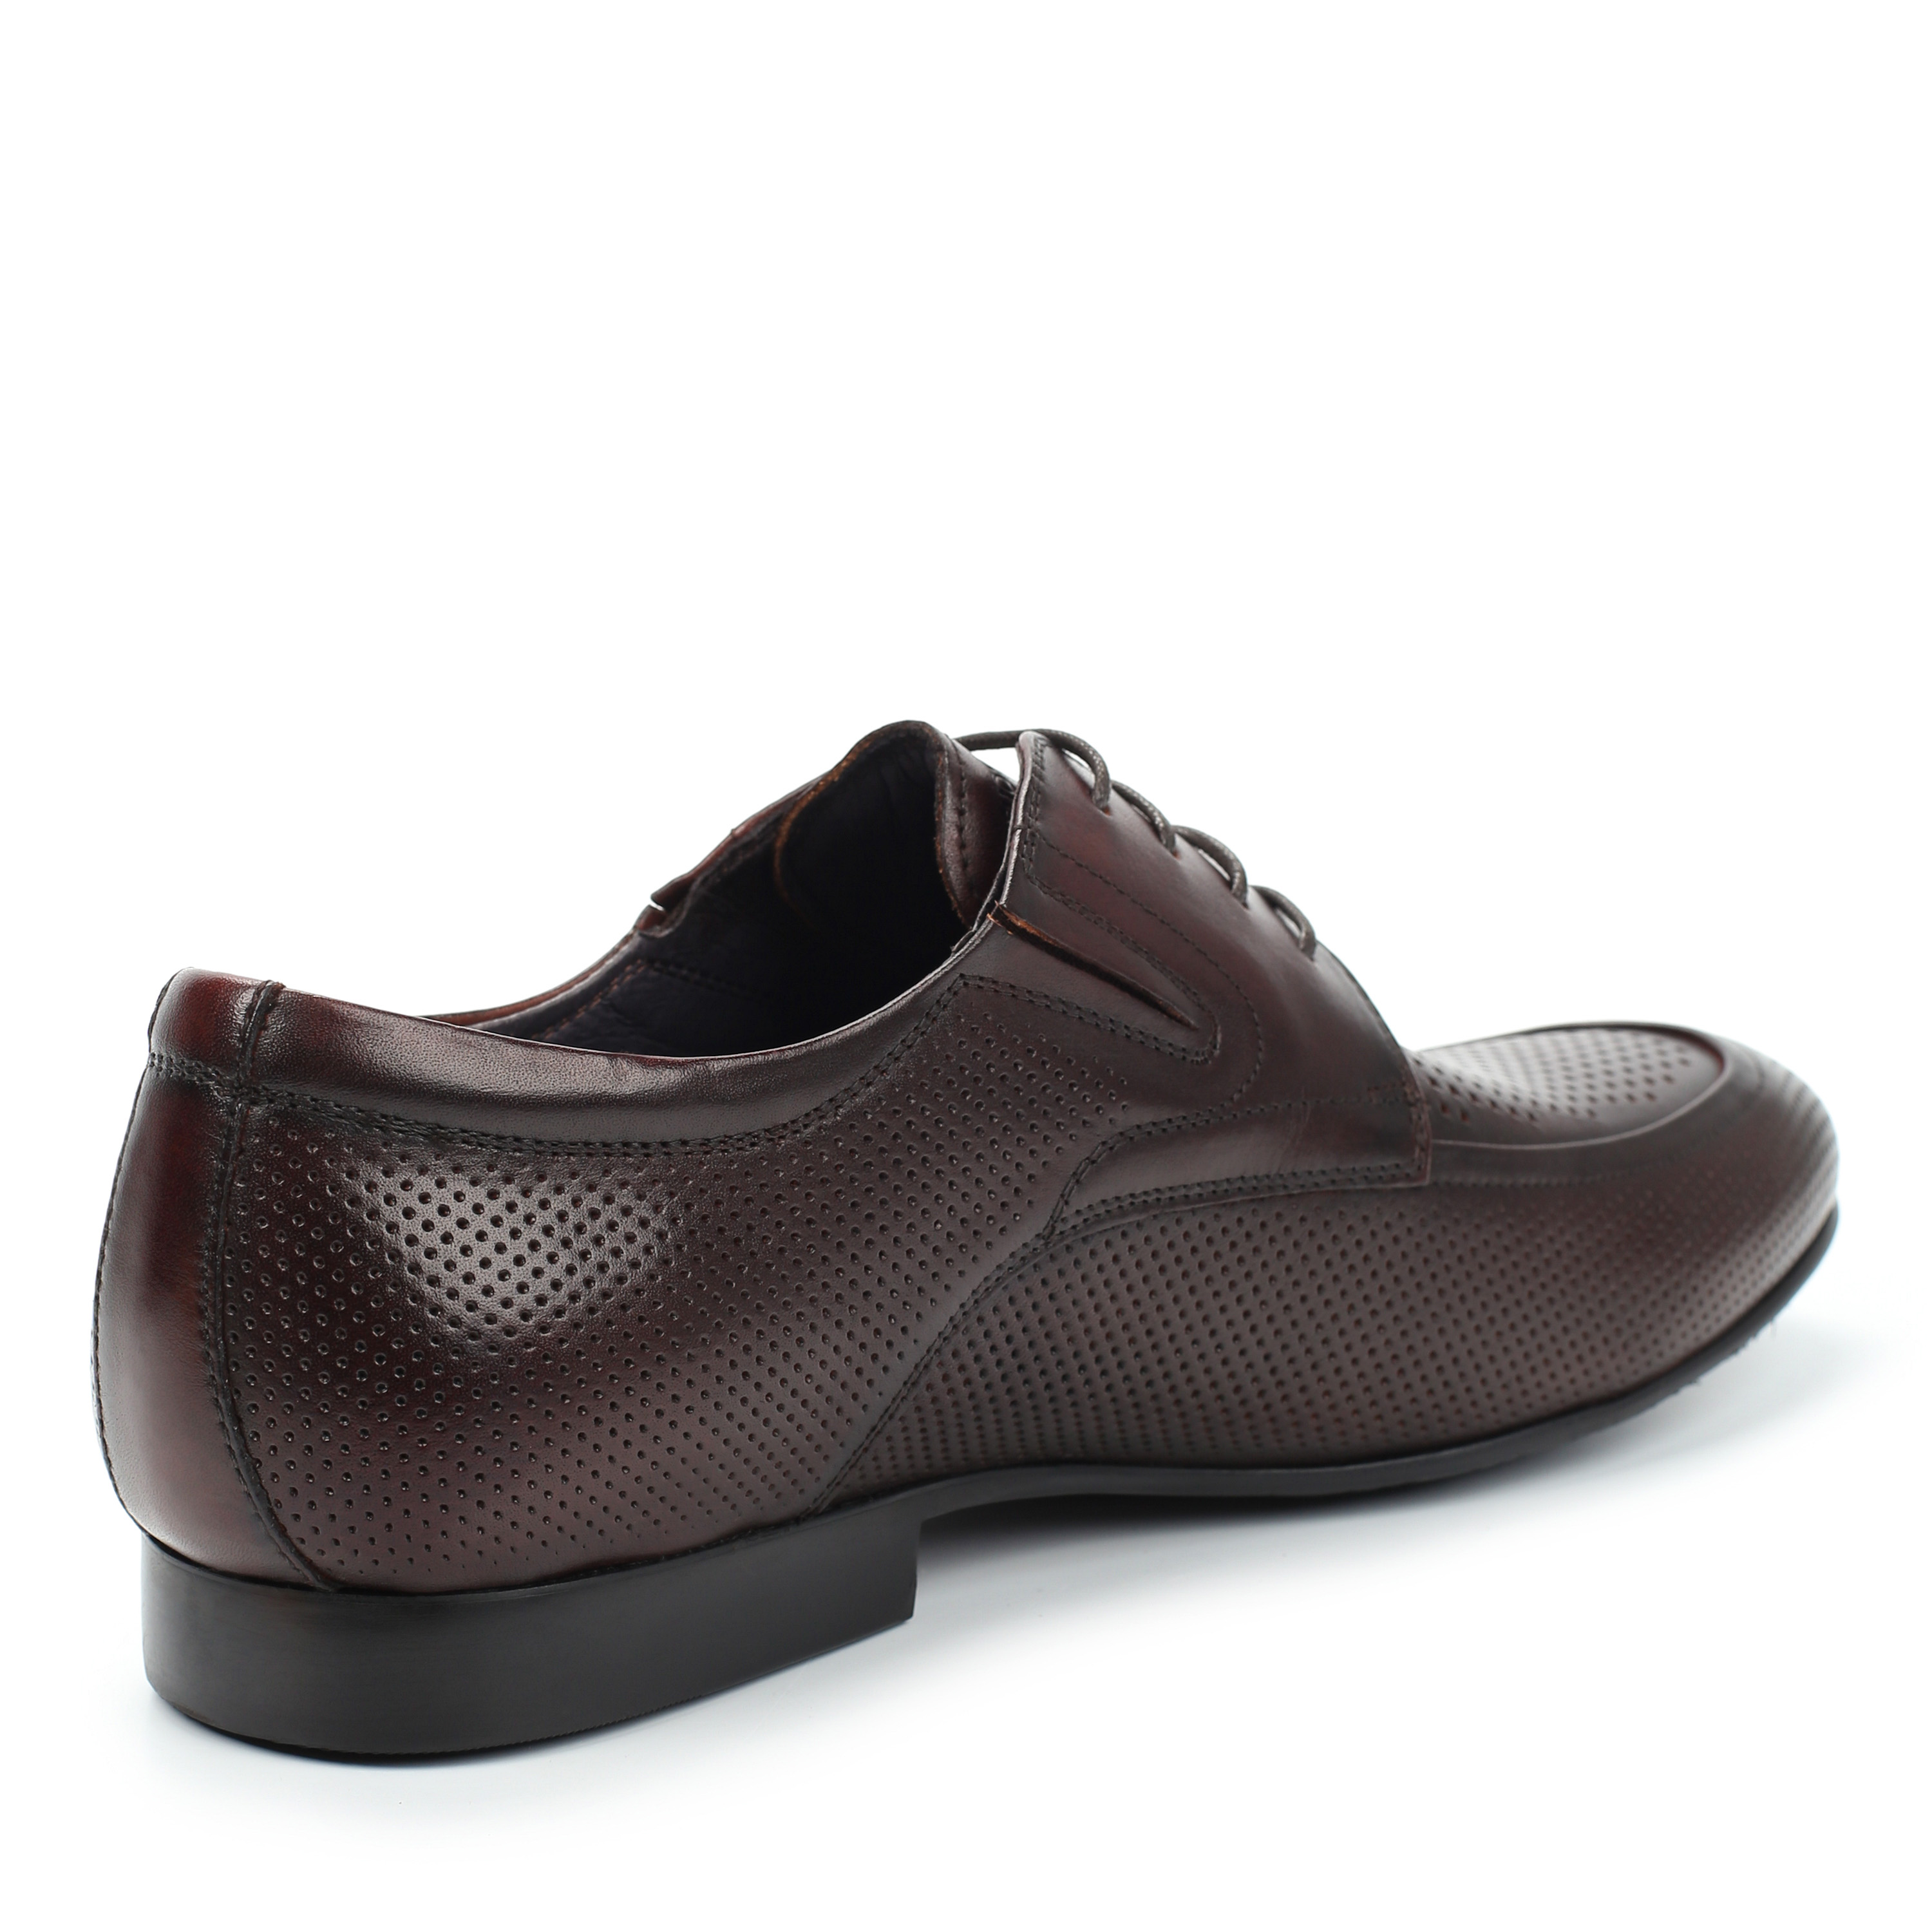 Туфли Thomas Munz 058-115B-1109 058-115B-1109, цвет коричневый, размер 41 полуботинки - фото 3